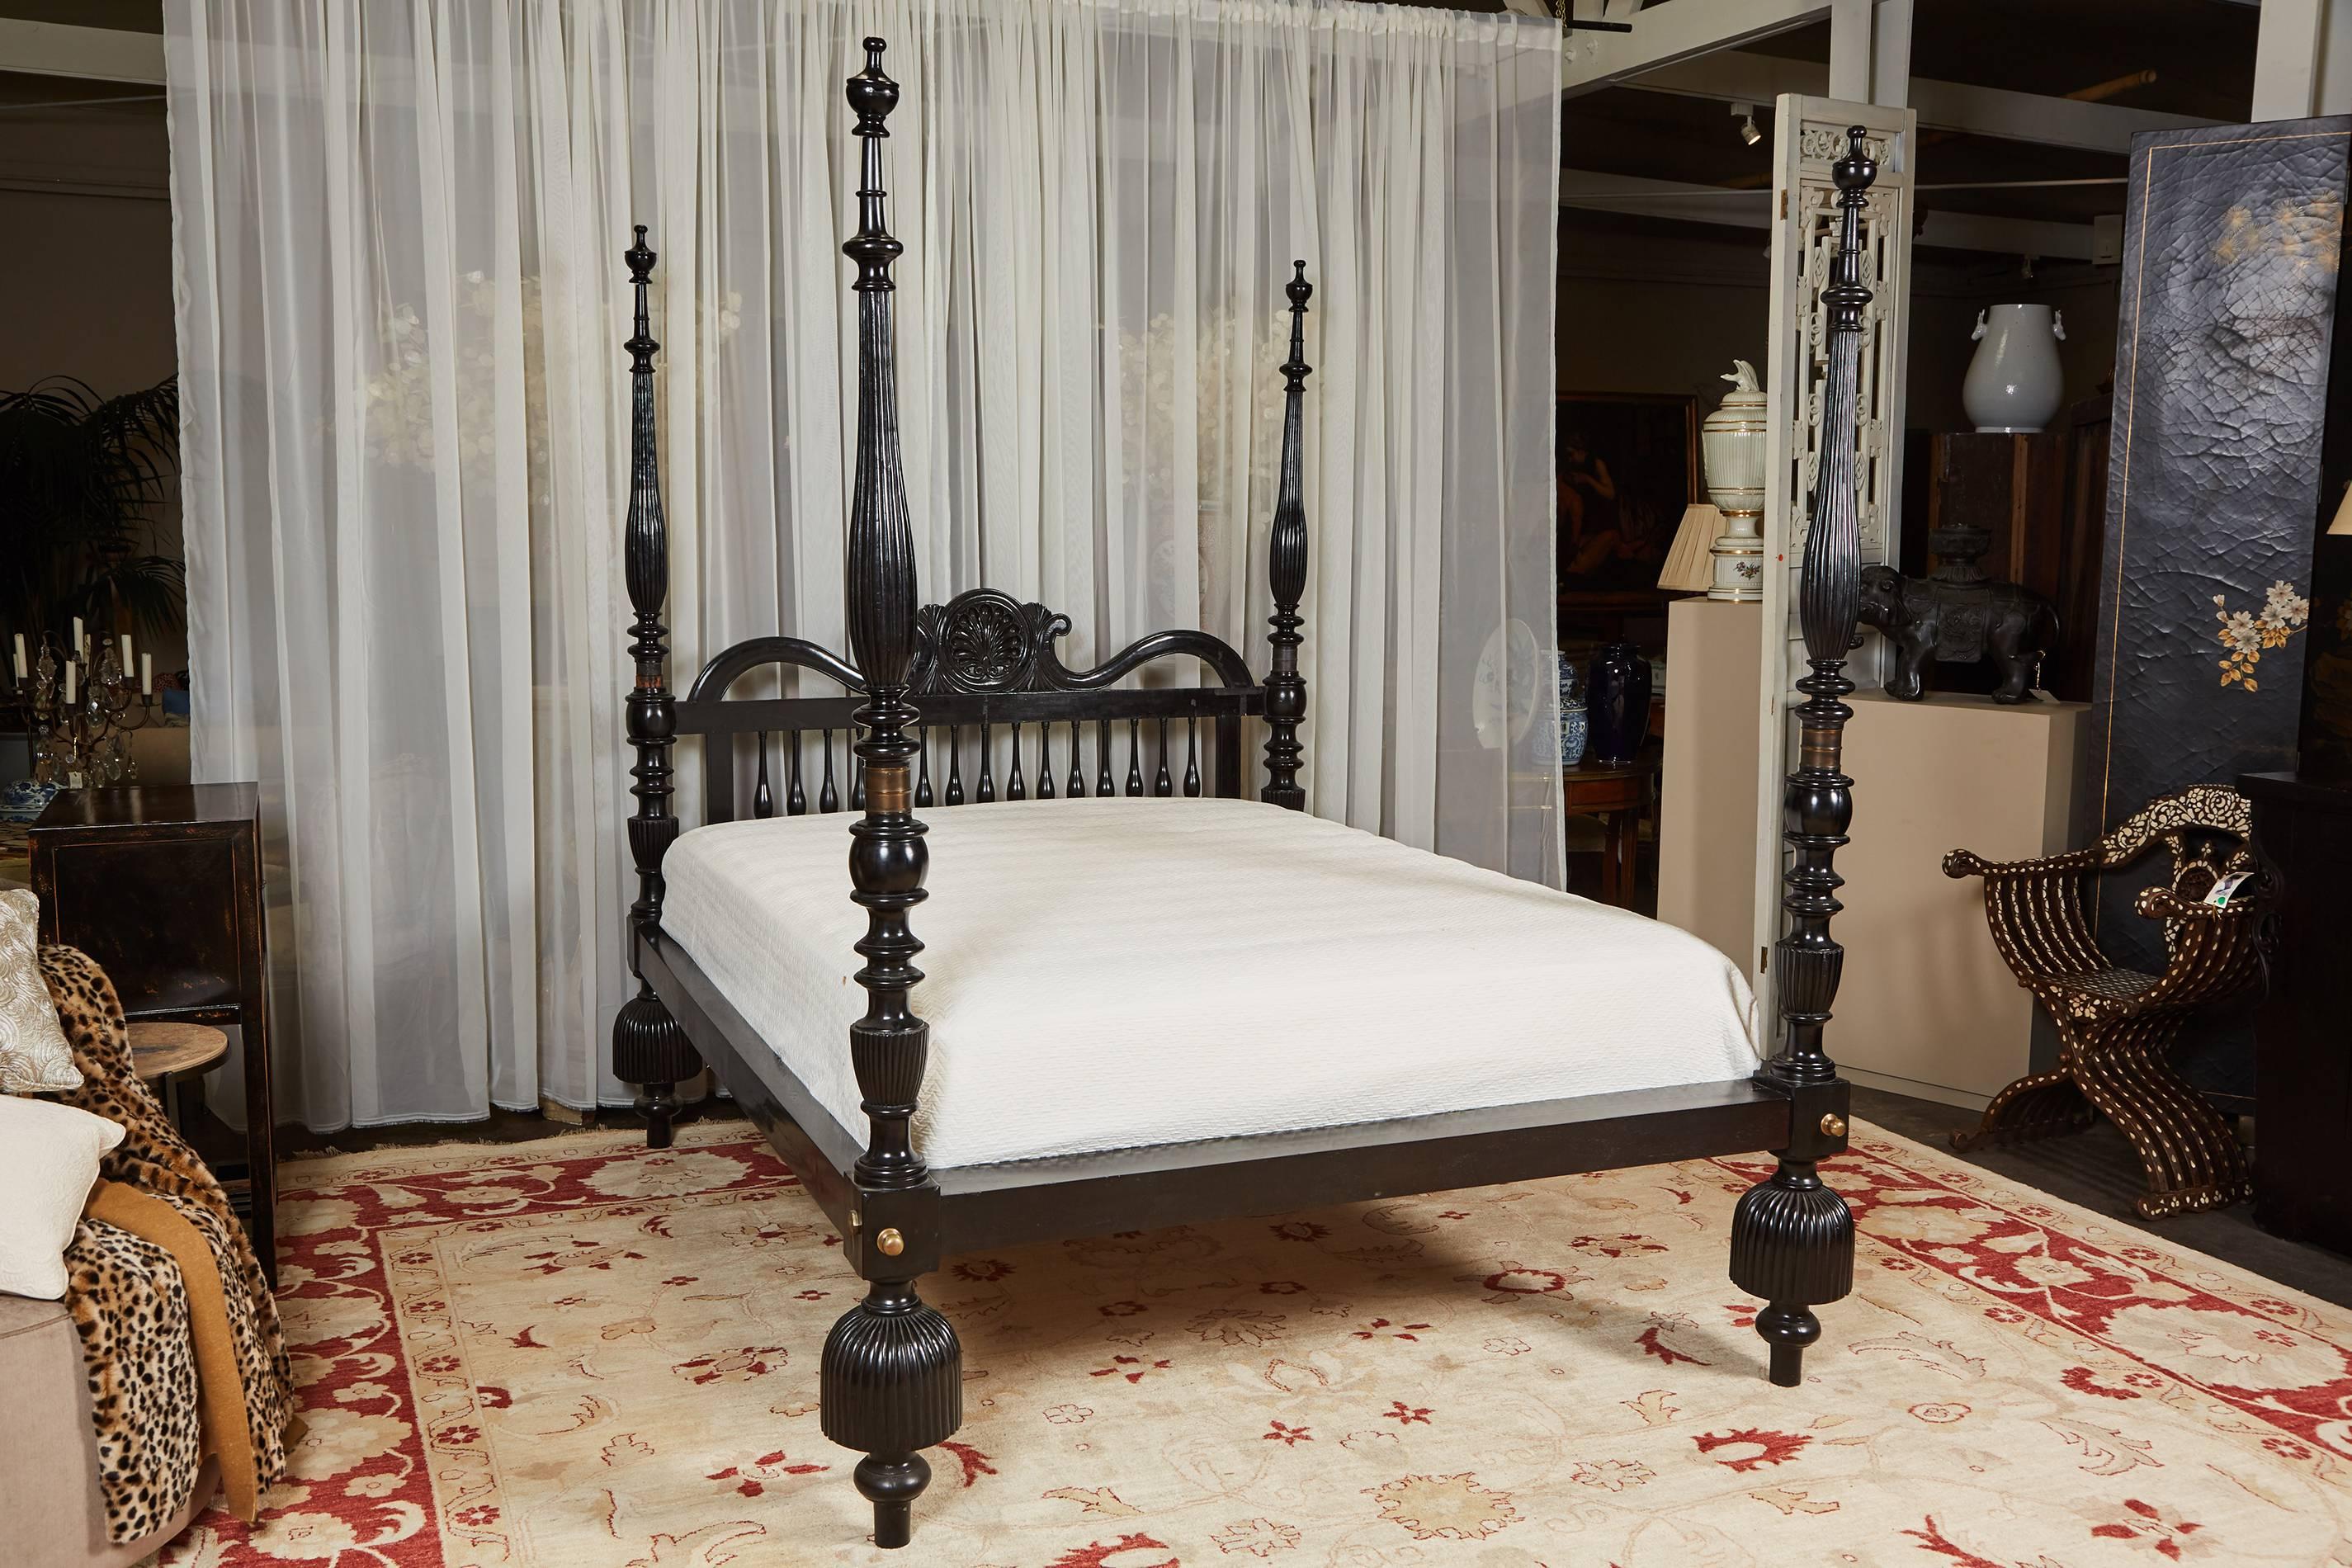 Un grand lit à baldaquin, en bois de Jak avec une finition ébène. Le lit présente des détails sculptés à la main, des pieds surdimensionnés de style gland, une tête de lit avec une décoration centrale en forme de coquillage. Assemblage avec des